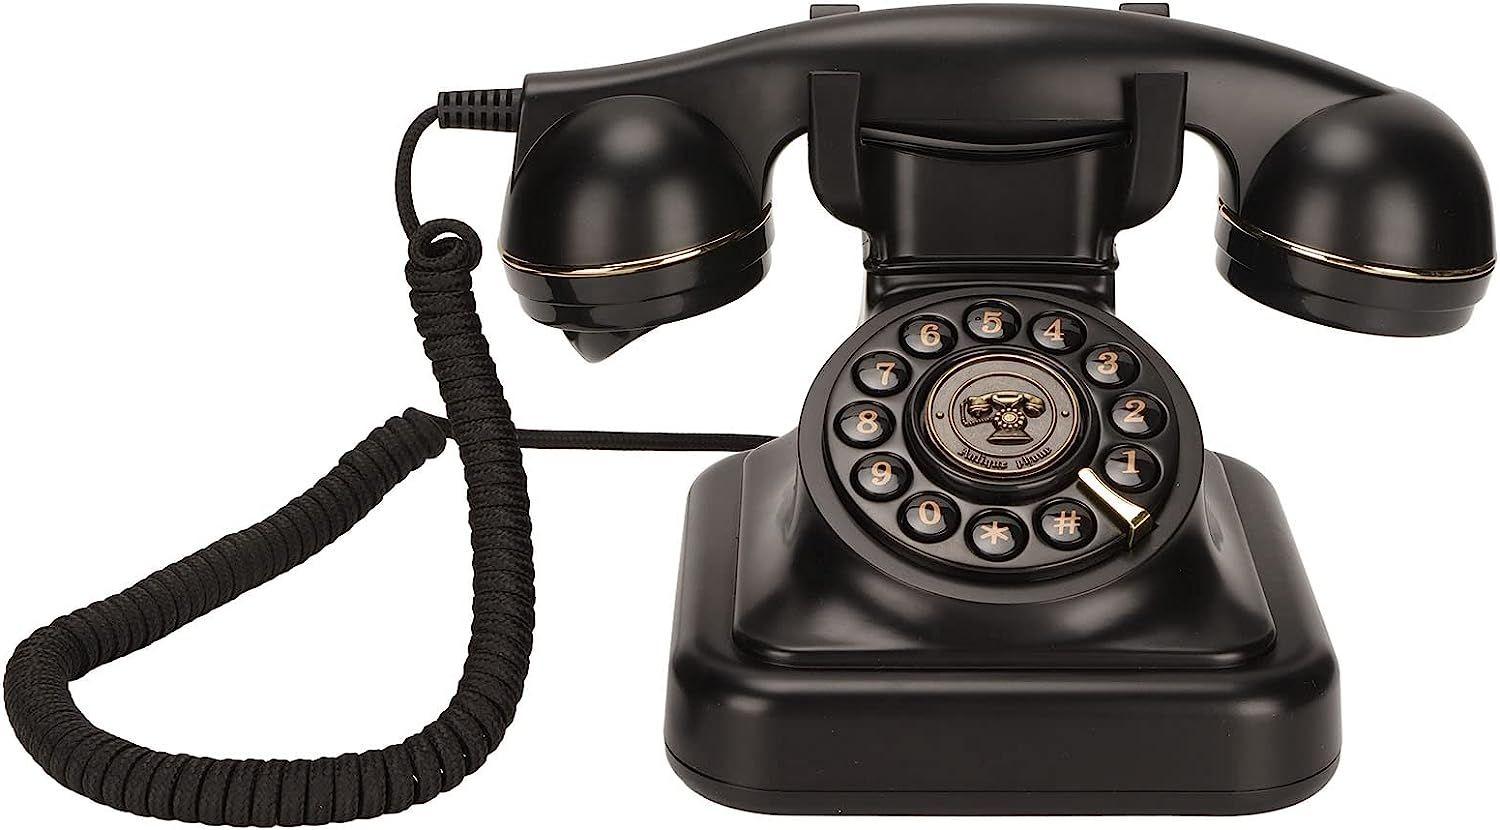 Acheter Téléphone filaire de bureau années 80, style rétro vintage, téléphone  fixe, support de téléphone fixe, volume de sonnerie